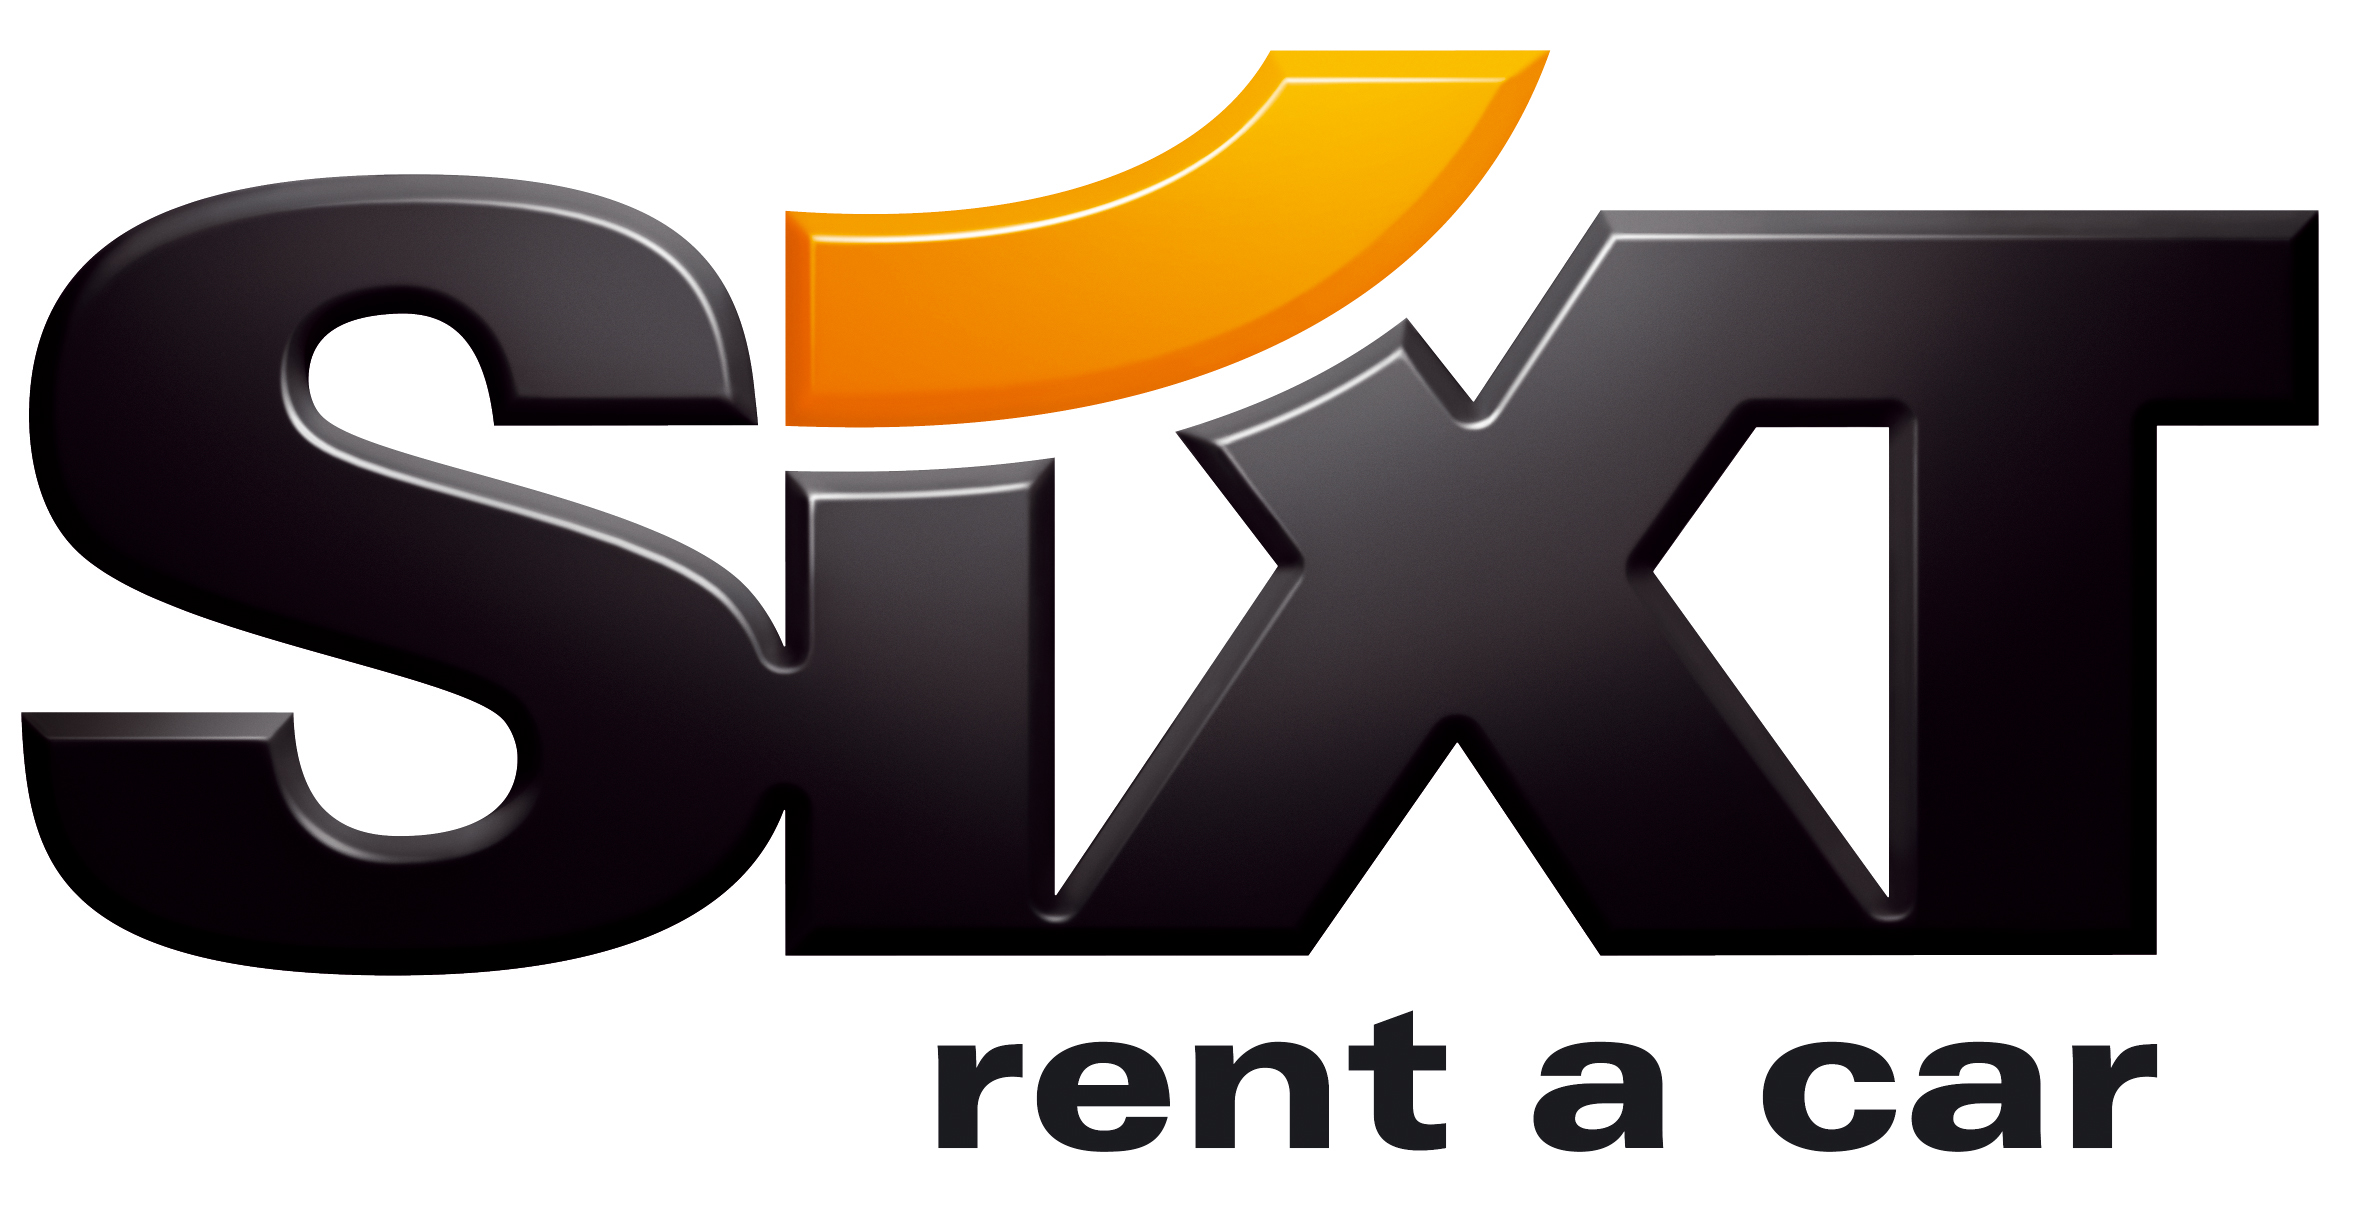 Sixt Rent A Car Logos